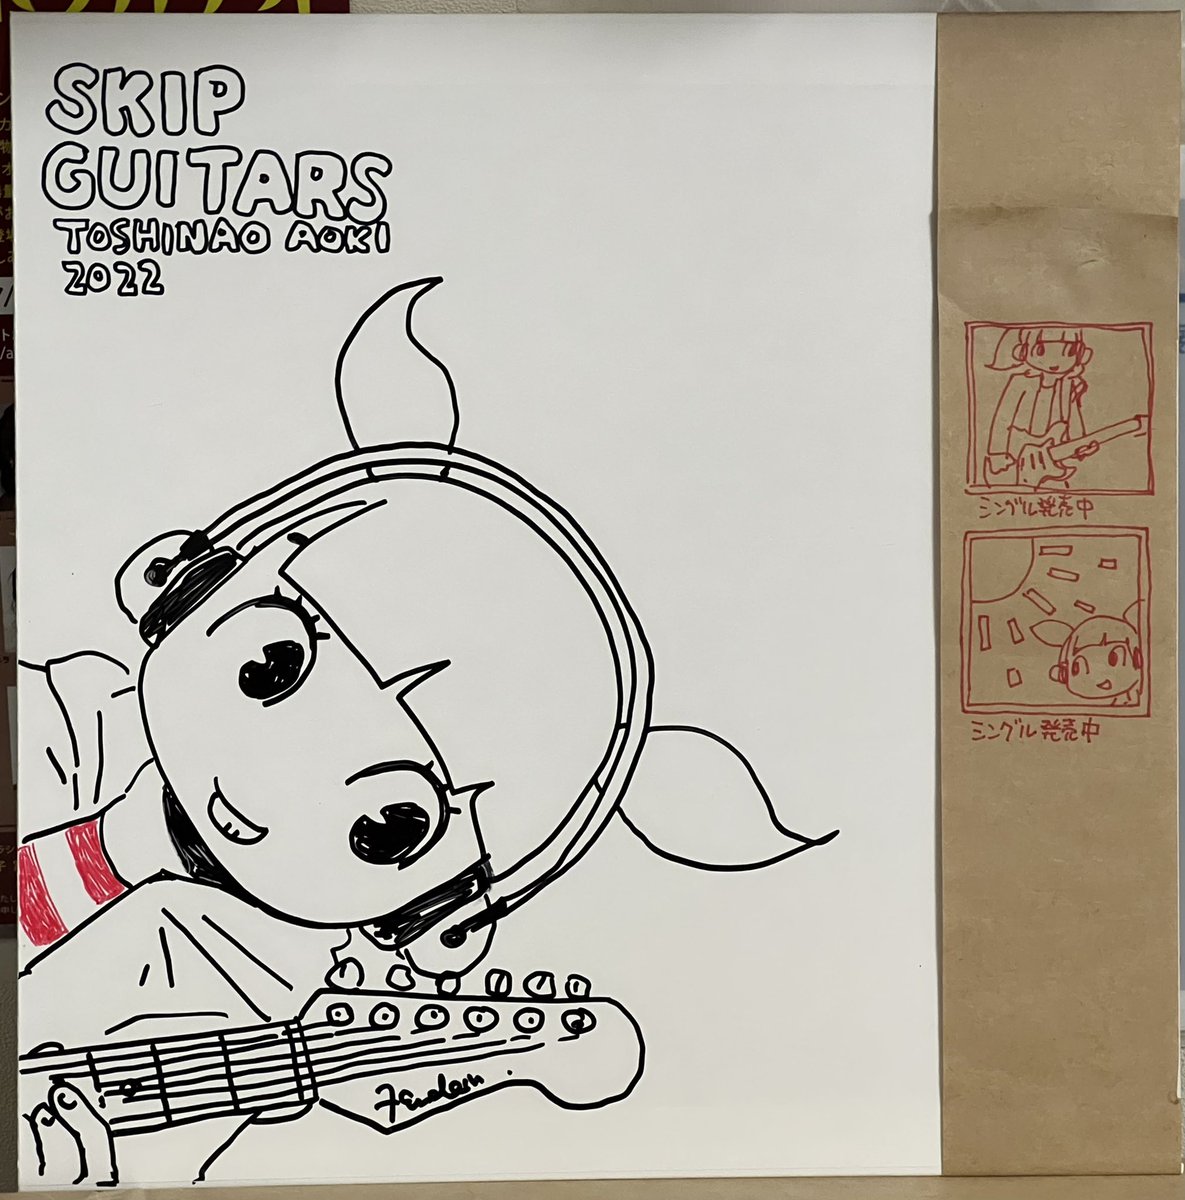 #吉祥寺レコード 手描き新作追加しました。
スキップギターズ「ギターを飛ばすな‼︎」 